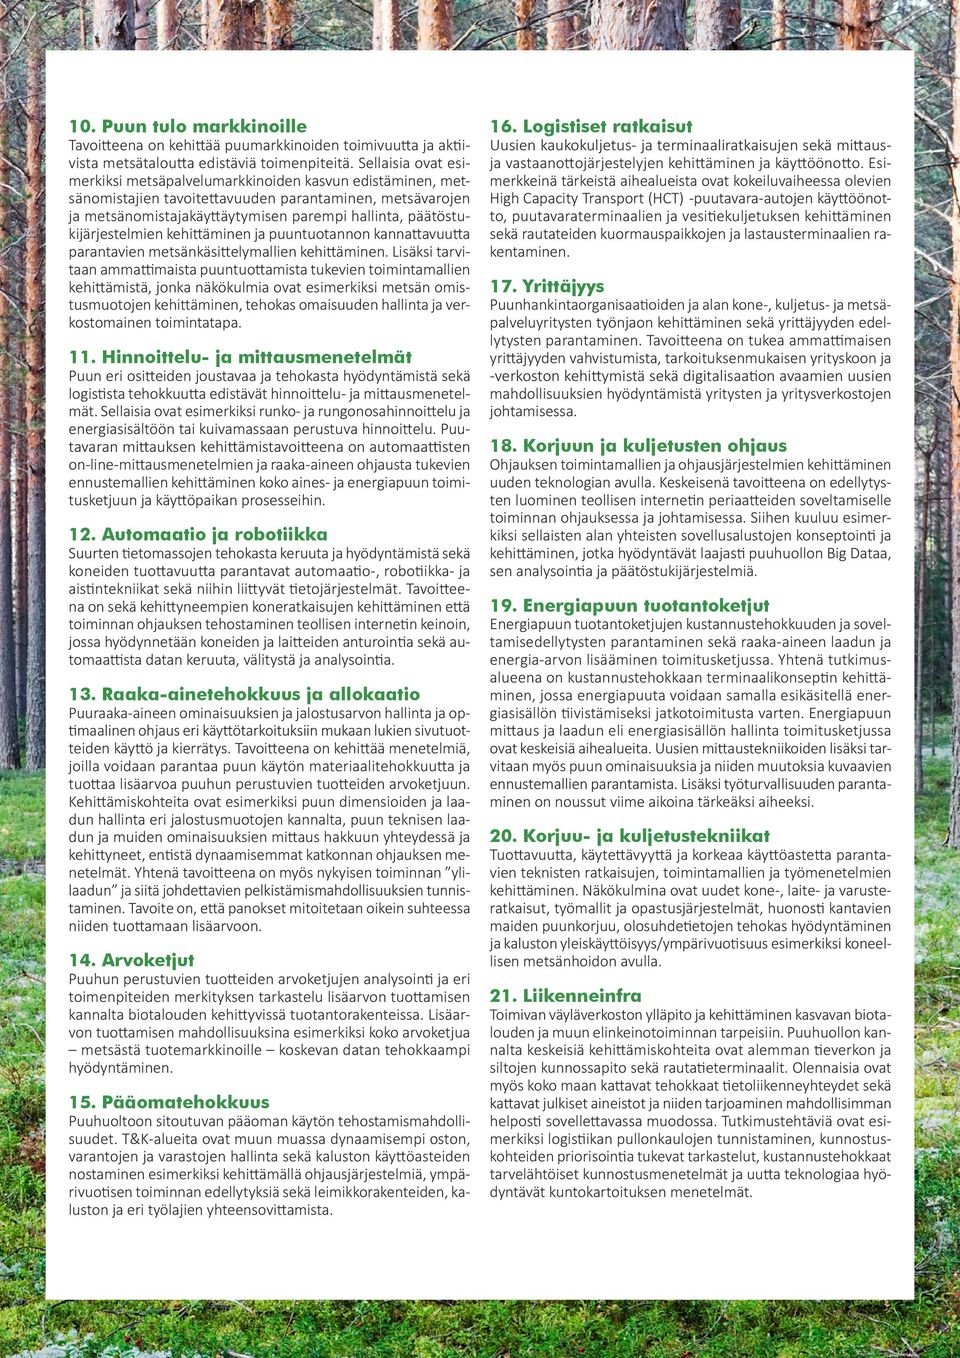 päätöstukijärjestelmien kehittäminen ja puuntuotannon kannattavuutta parantavien metsänkäsittelymallien kehittäminen.